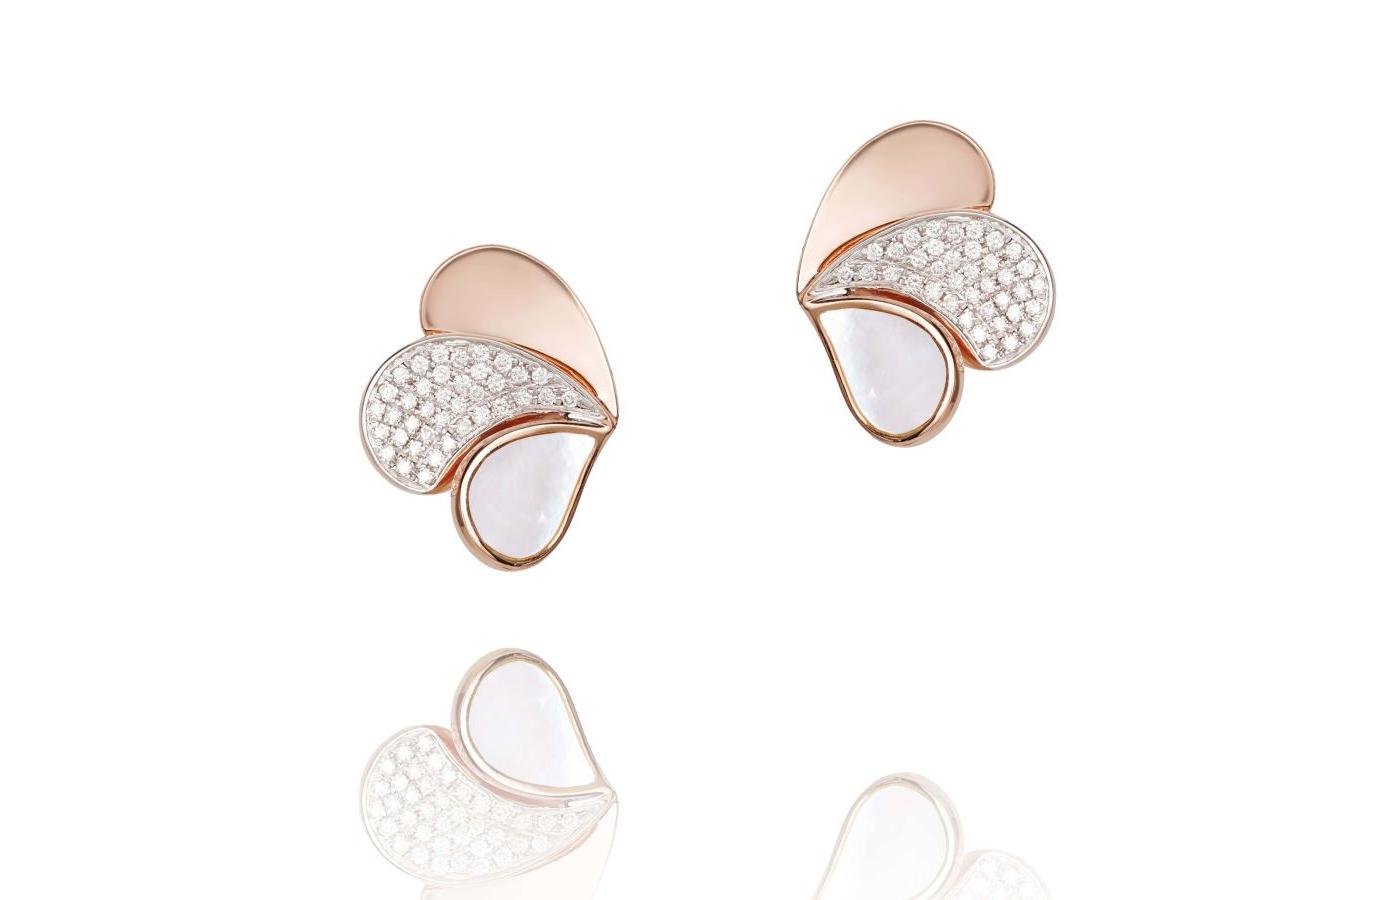 Earrings by Elke Berr